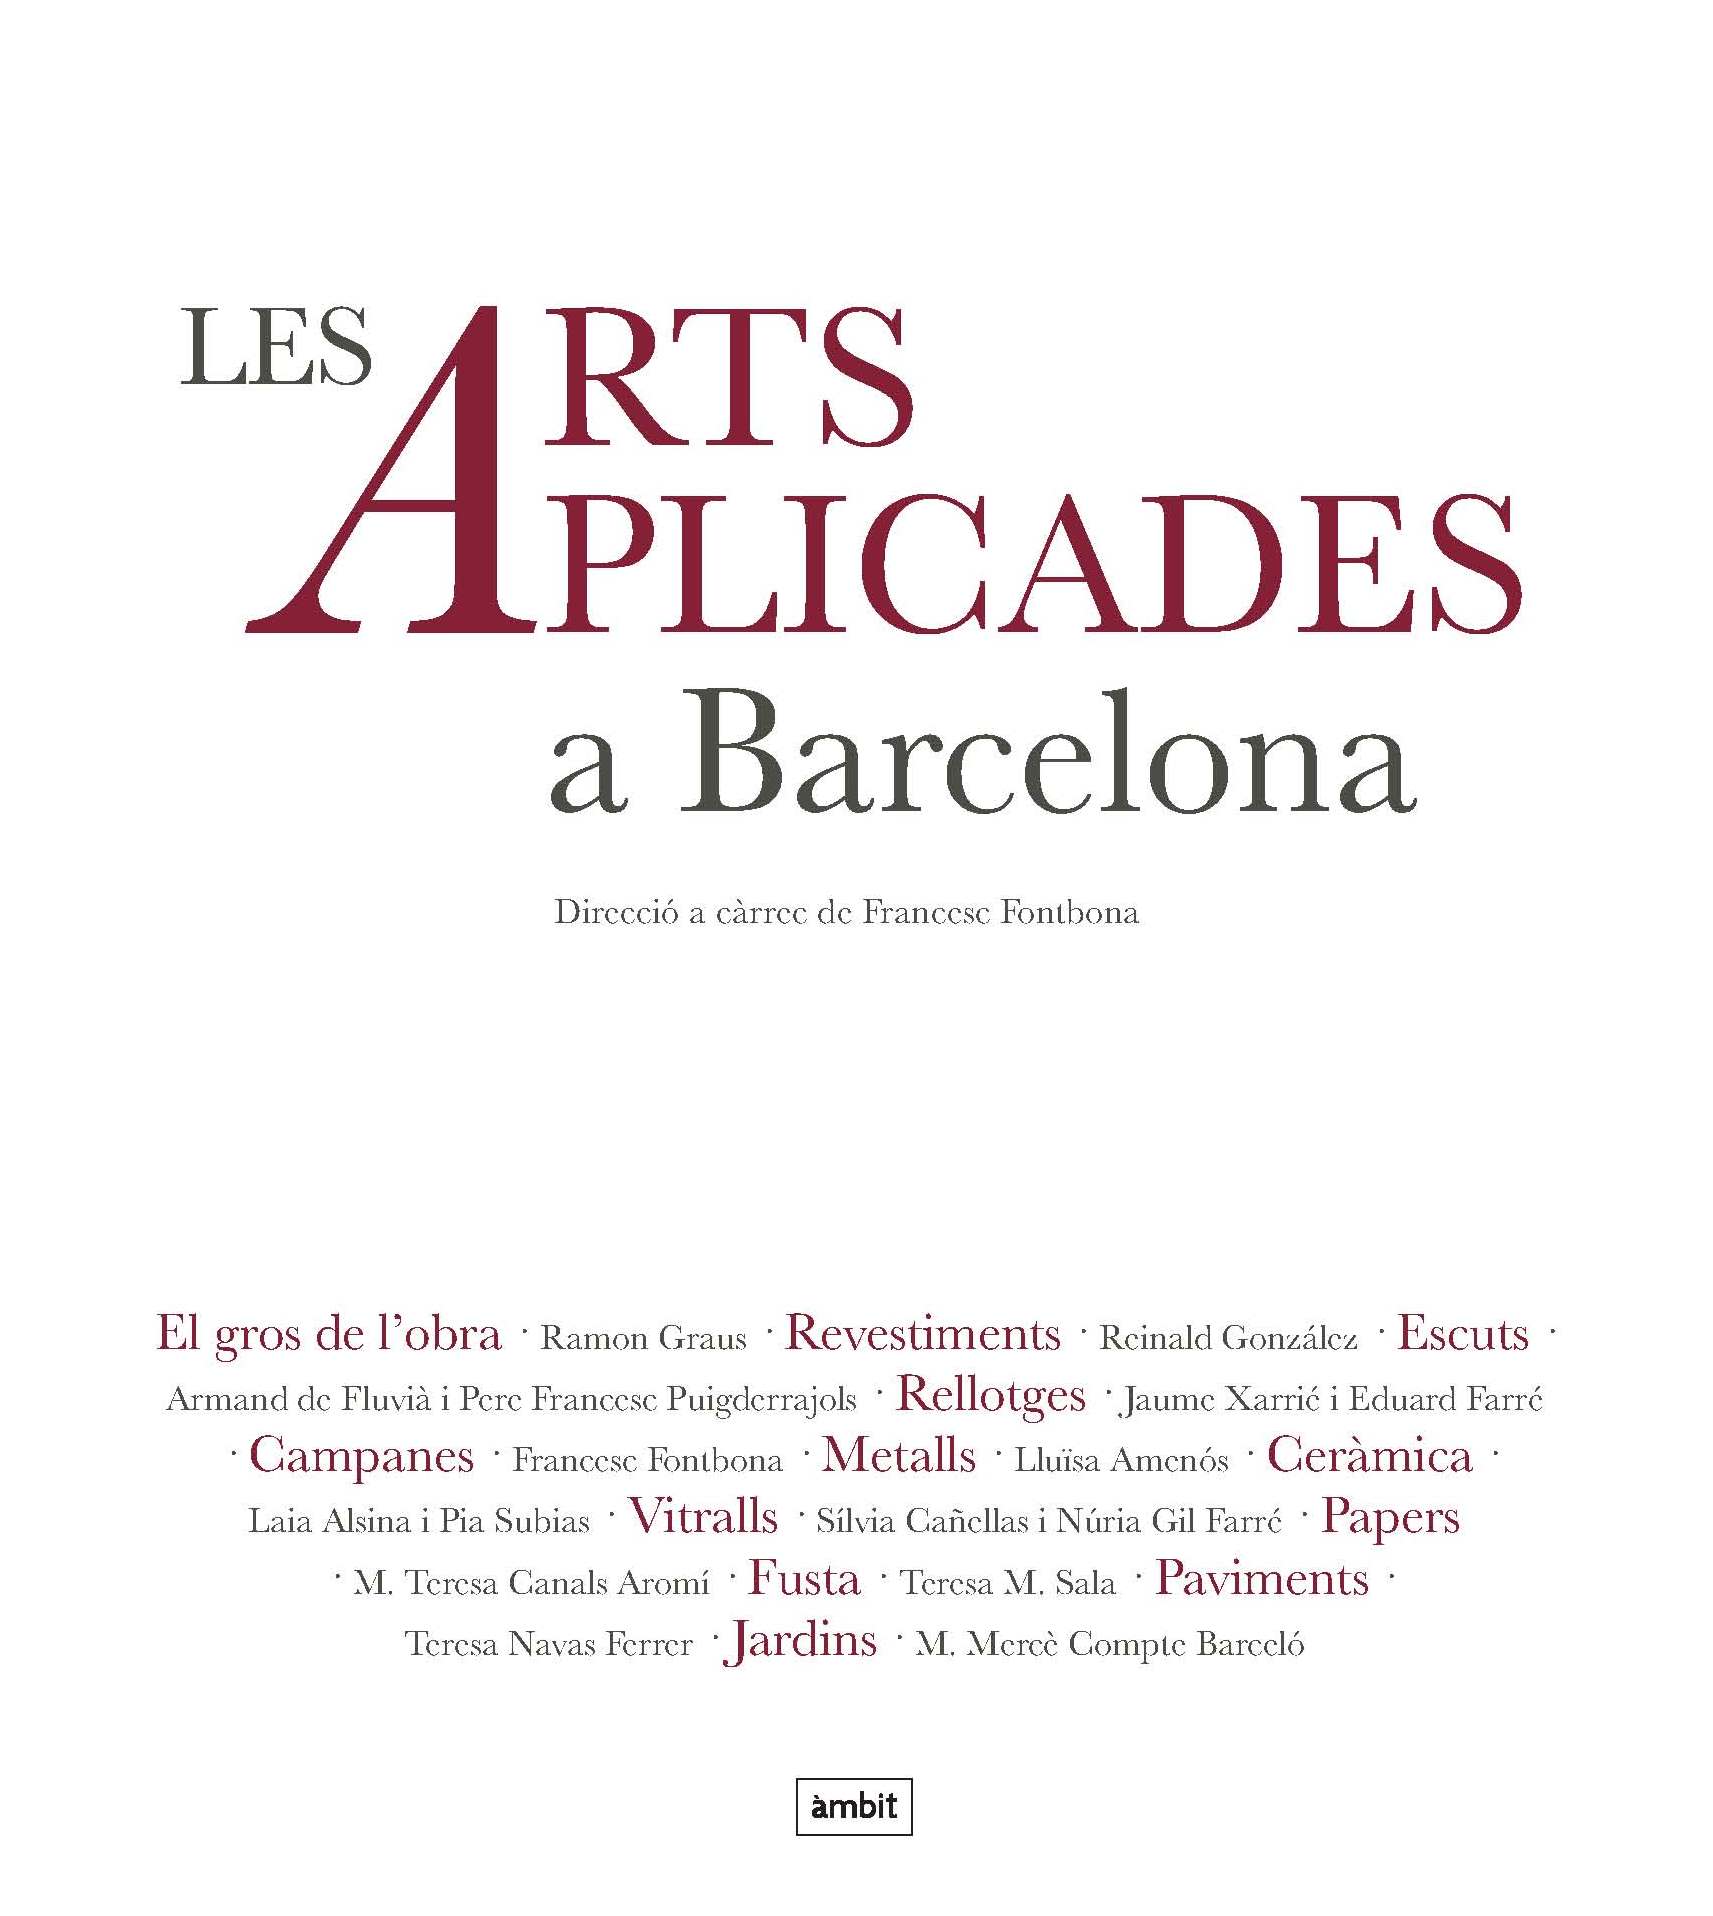 Les Arts Aplicades a Barcelona